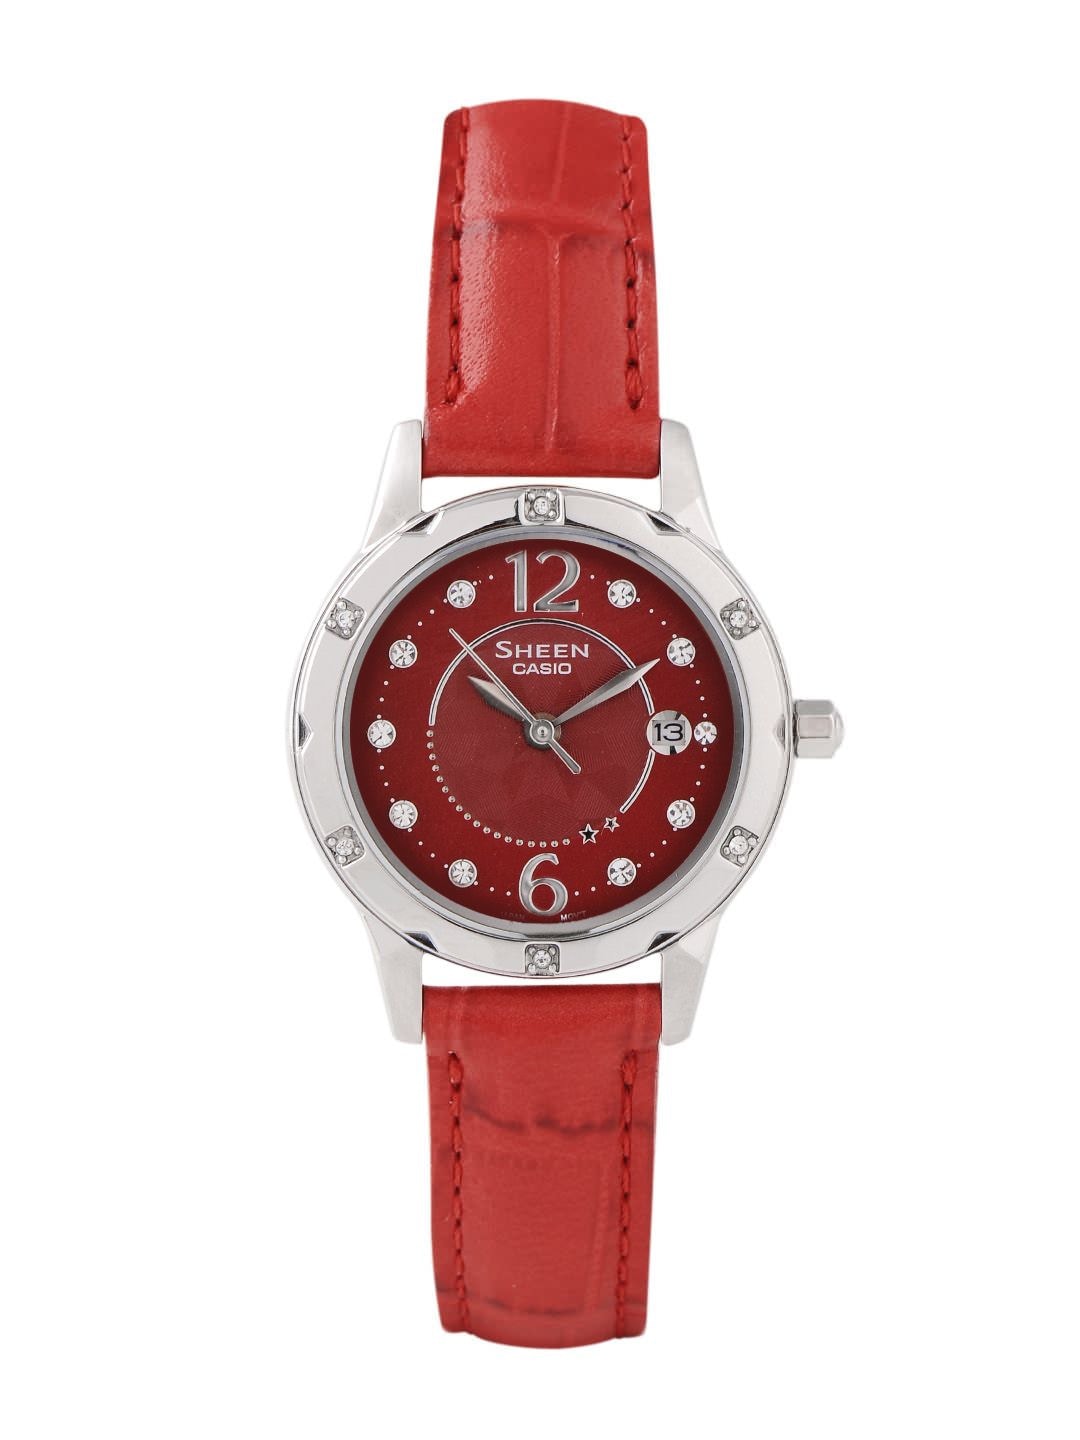 CASIO SHEEN Women Red Dial Watch SX017